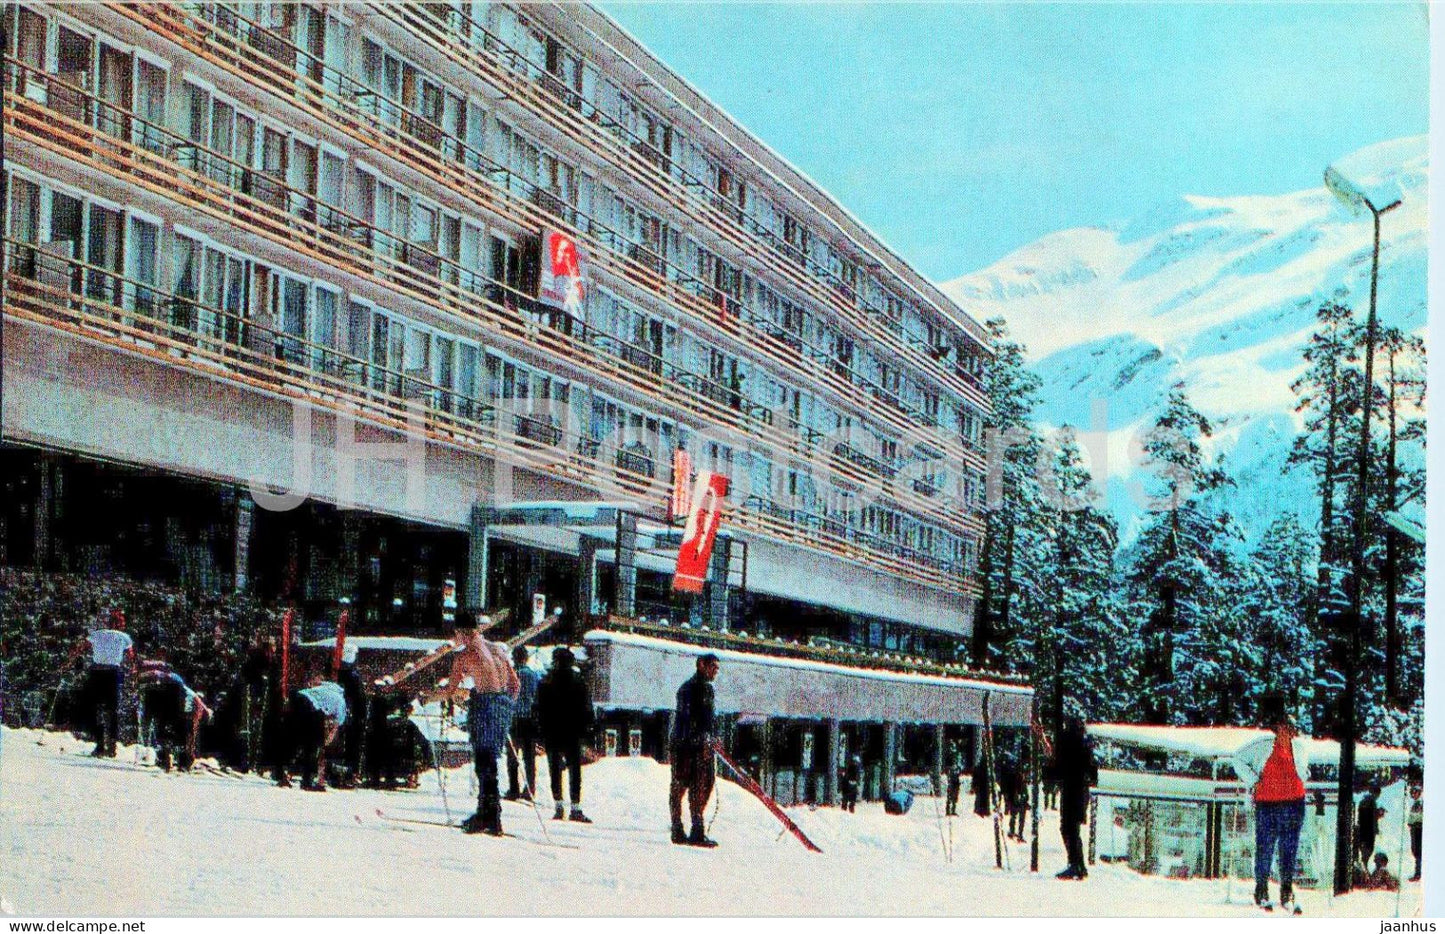 Elbrus region - hotel Azau - 1973 - Russia USSR - unused - JH Postcards